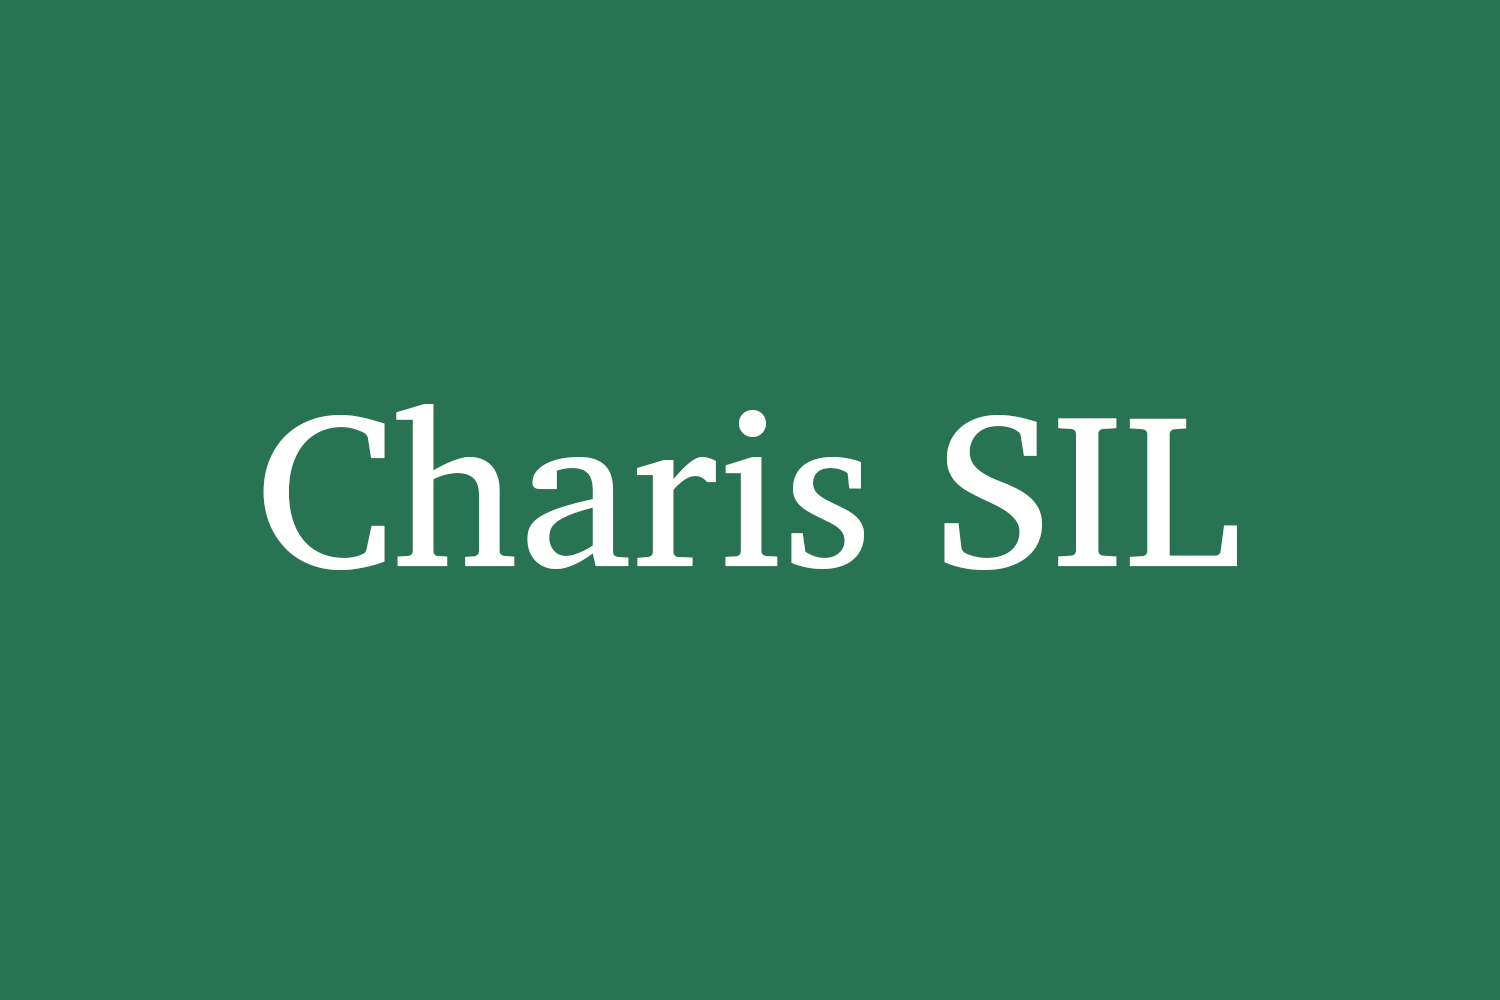 Charis SIL